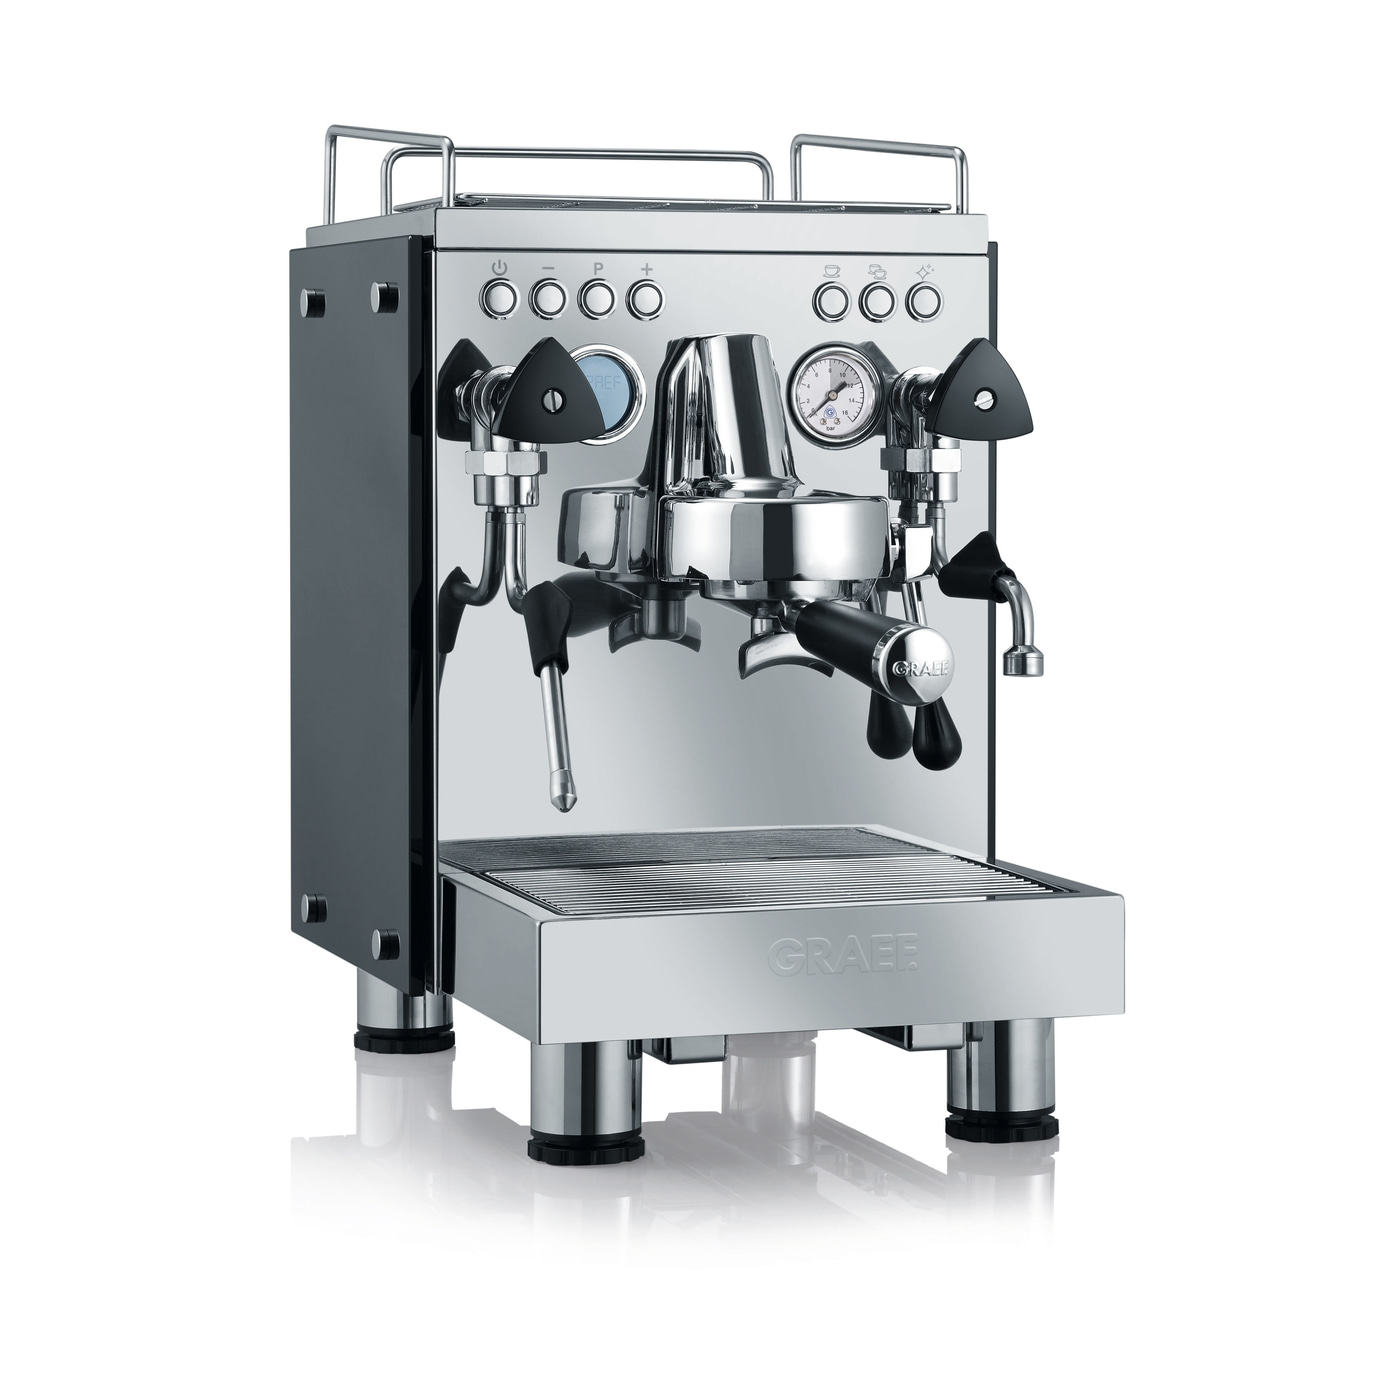 GRAEF ES1000 "Contessa" Siebträger Espressomaschine mit LCD Display